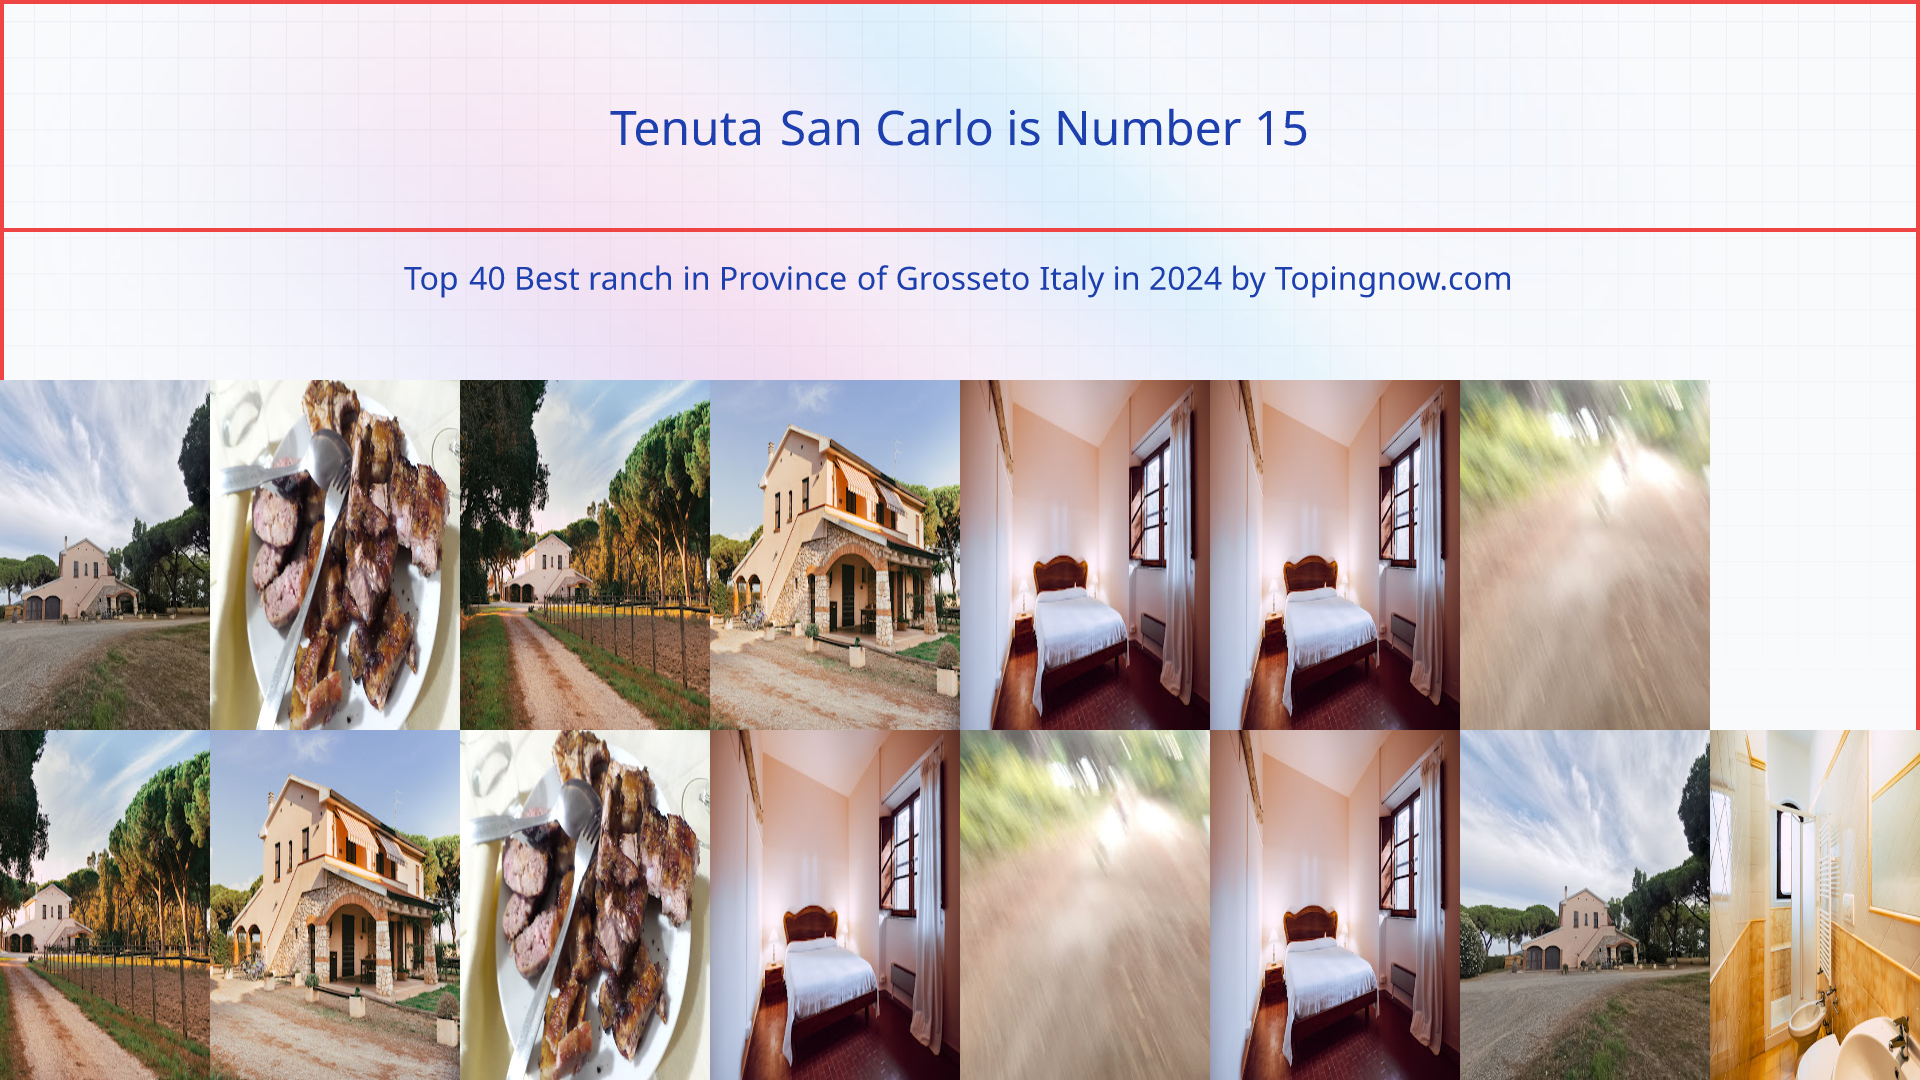 Tenuta San Carlo: Top 40 Best ranch in Province of Grosseto Italy in 2024